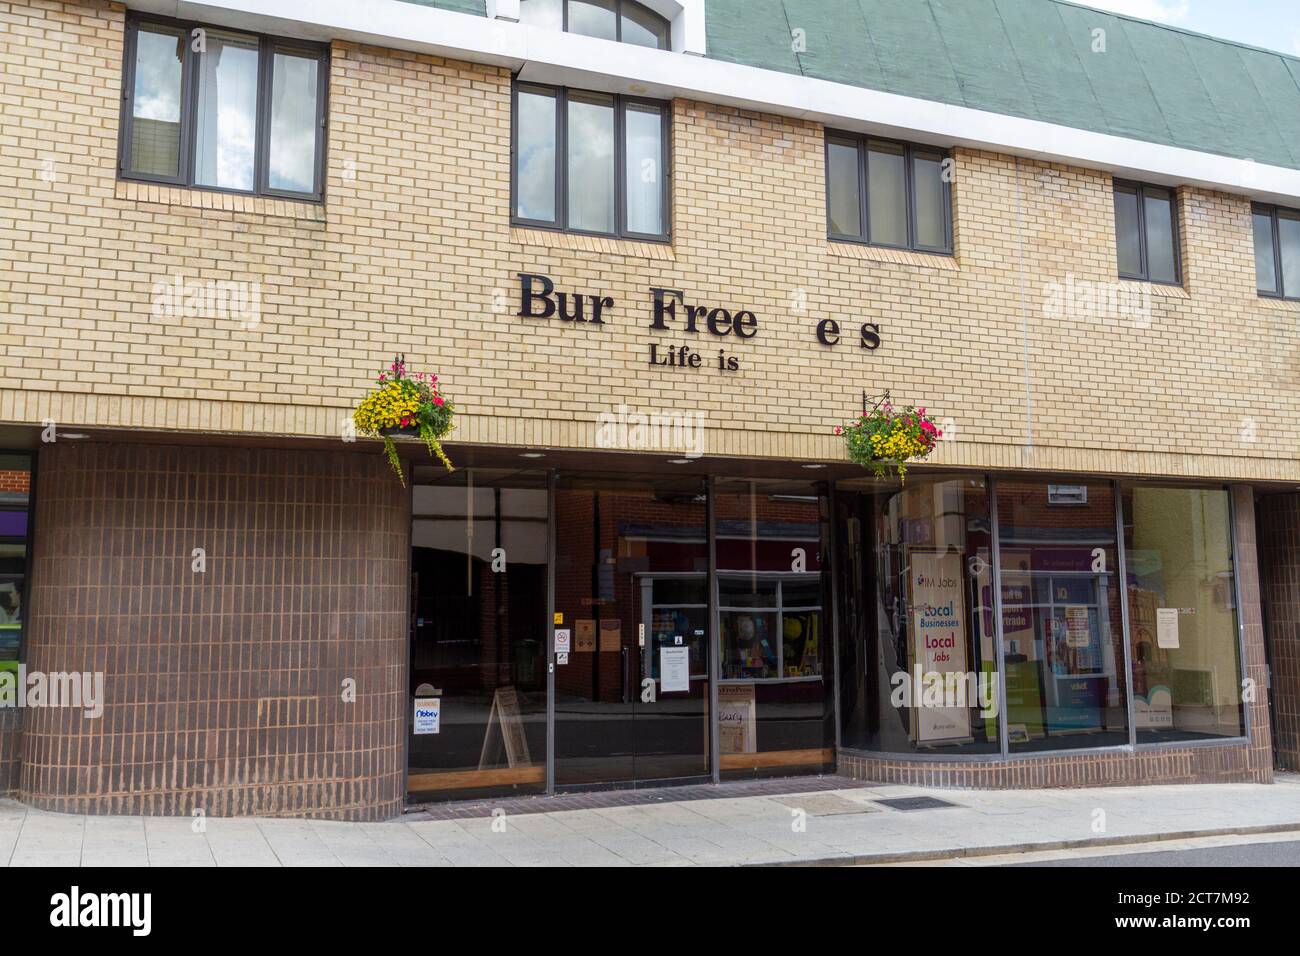 Die Büros der Bury Free Press Zeitung ("Life is Local") mit vielen fehlenden Briefen, King's Road, Bury St Edmunds, Suffolk, UK. Stockfoto